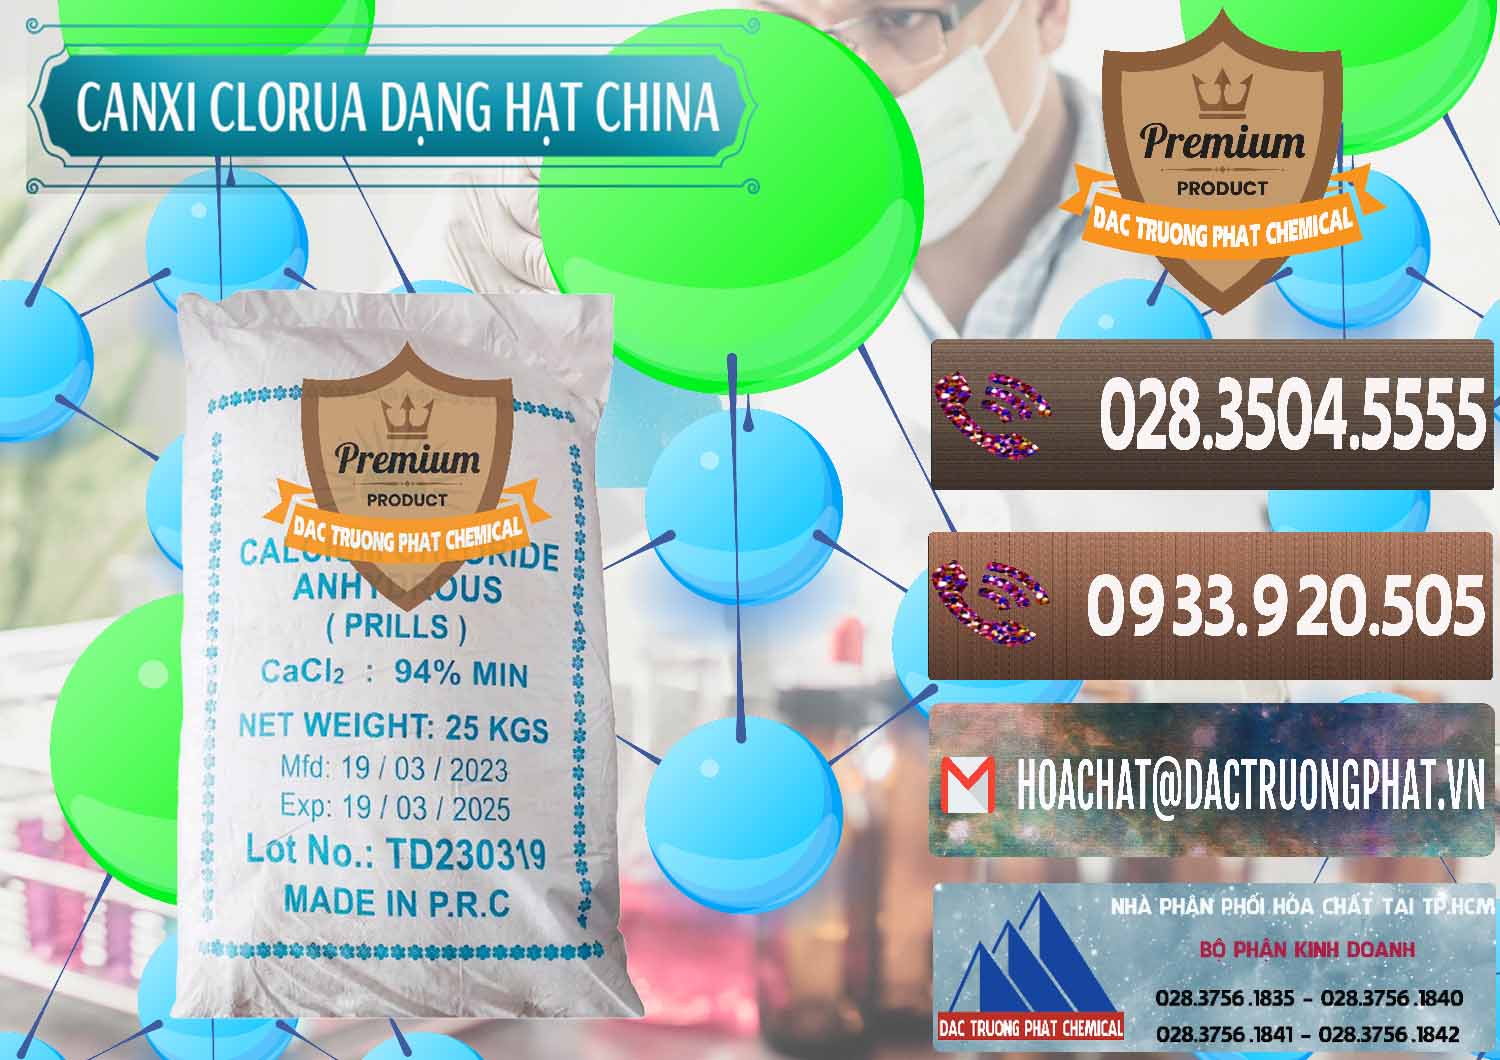 Nơi chuyên bán và phân phối CaCl2 – Canxi Clorua 94% Dạng Hạt Trung Quốc China - 0373 - Cung cấp và bán hóa chất tại TP.HCM - hoachatviet.net